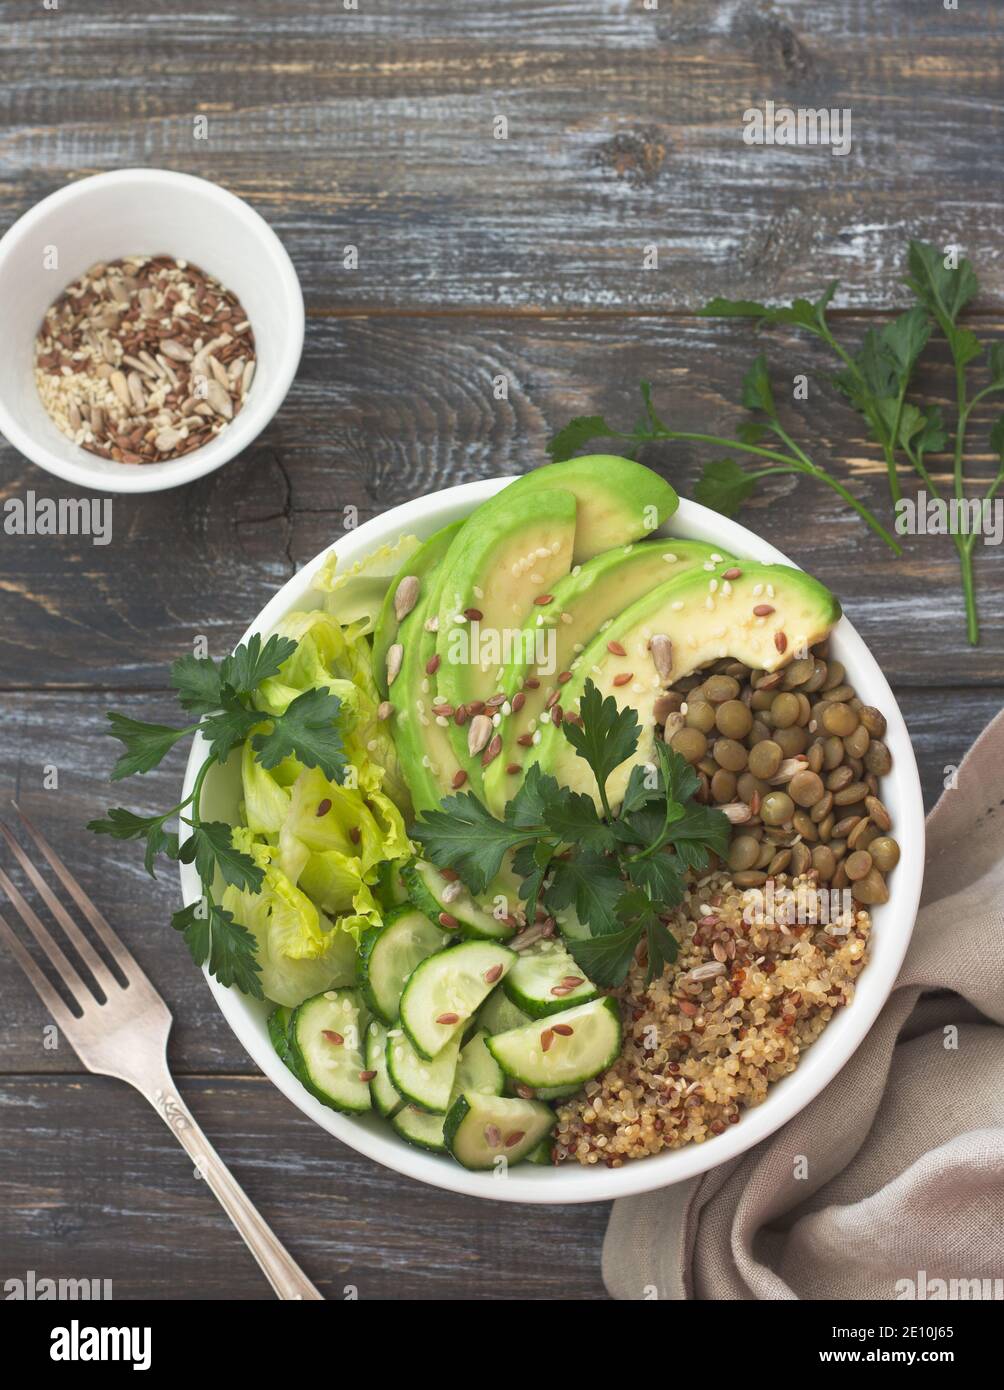 Coppa di Buddha verde con lenticchie, quinoa, avocado, cetriolo, lattuga fresca, erbe e semi. Cibo sano e salutare. Su sfondo di legno, Foto Stock